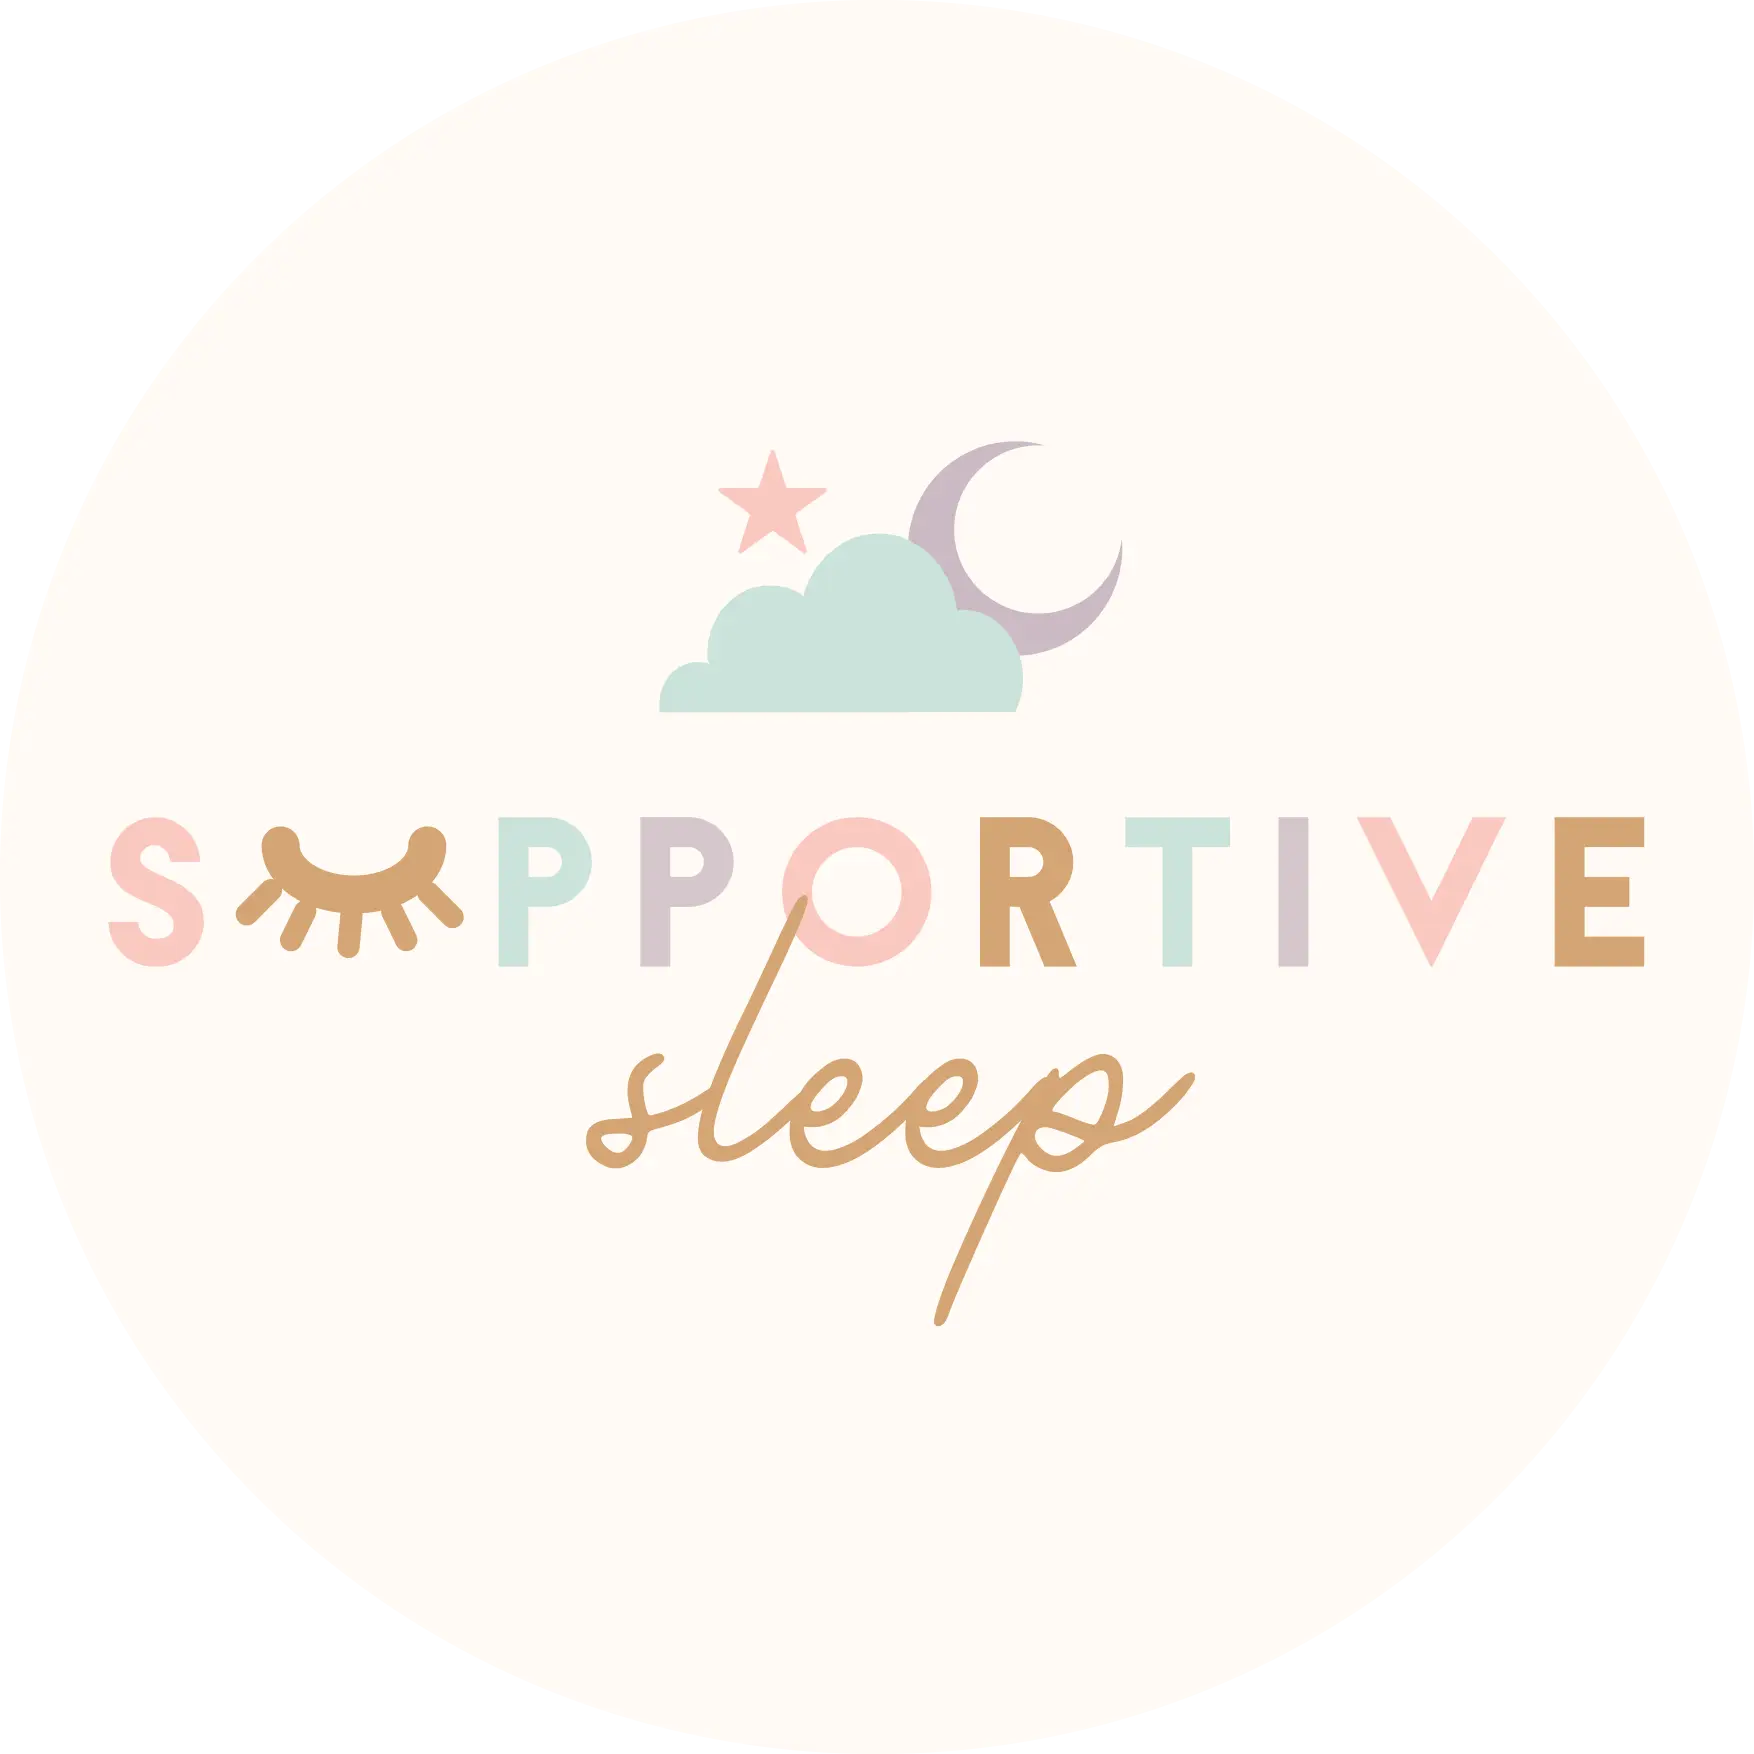 Supportive Sleep